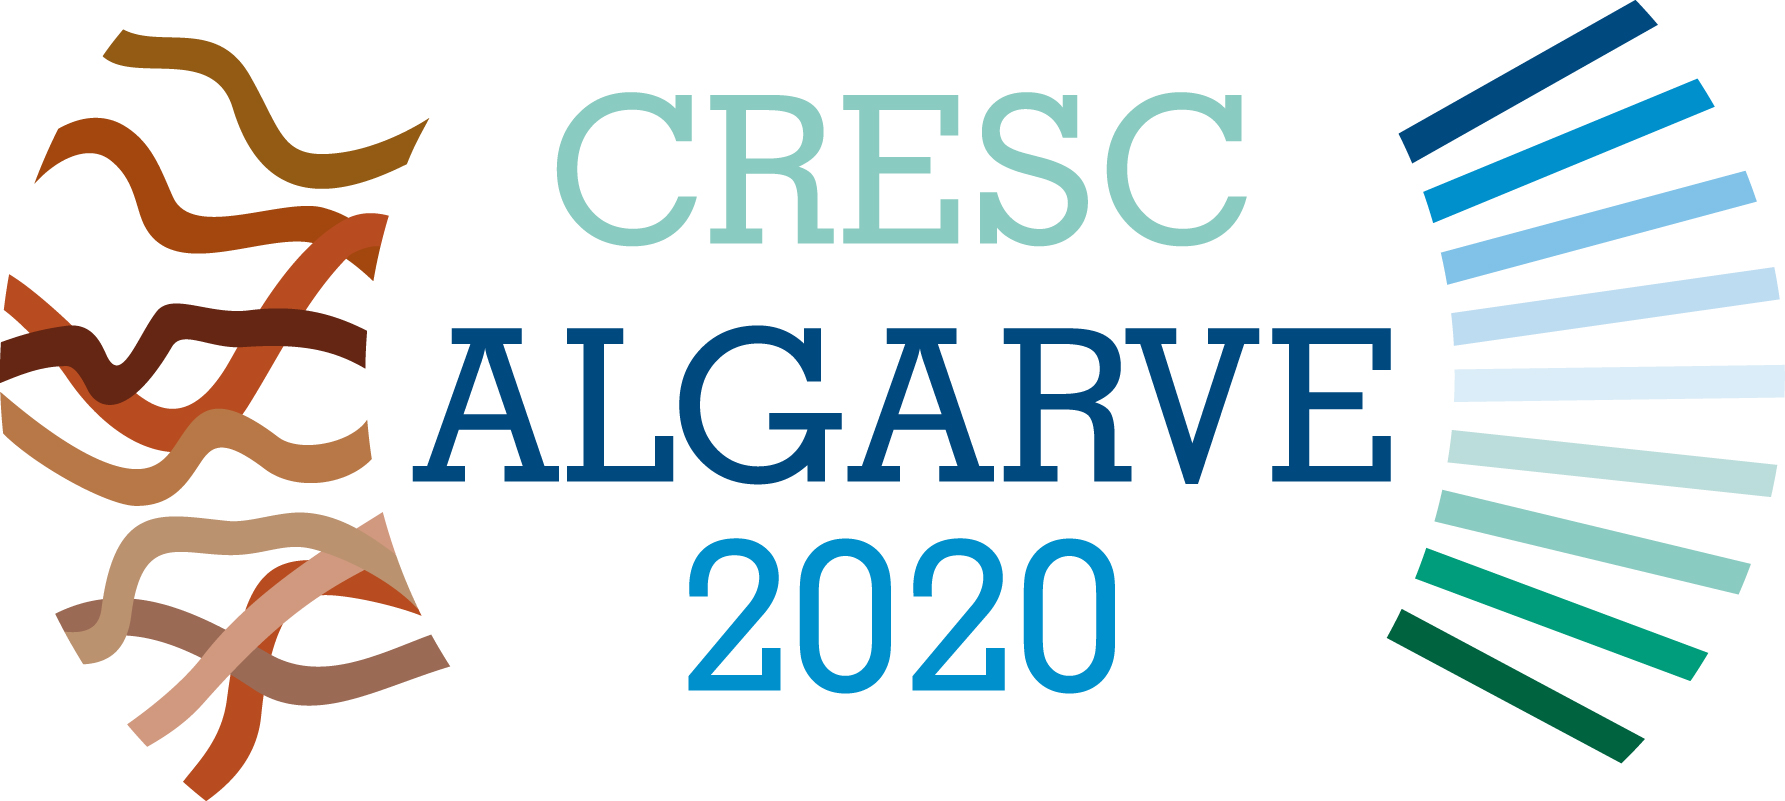 ALGARVE 2020 apoia formação de 6.500 professores para a Transição Digital